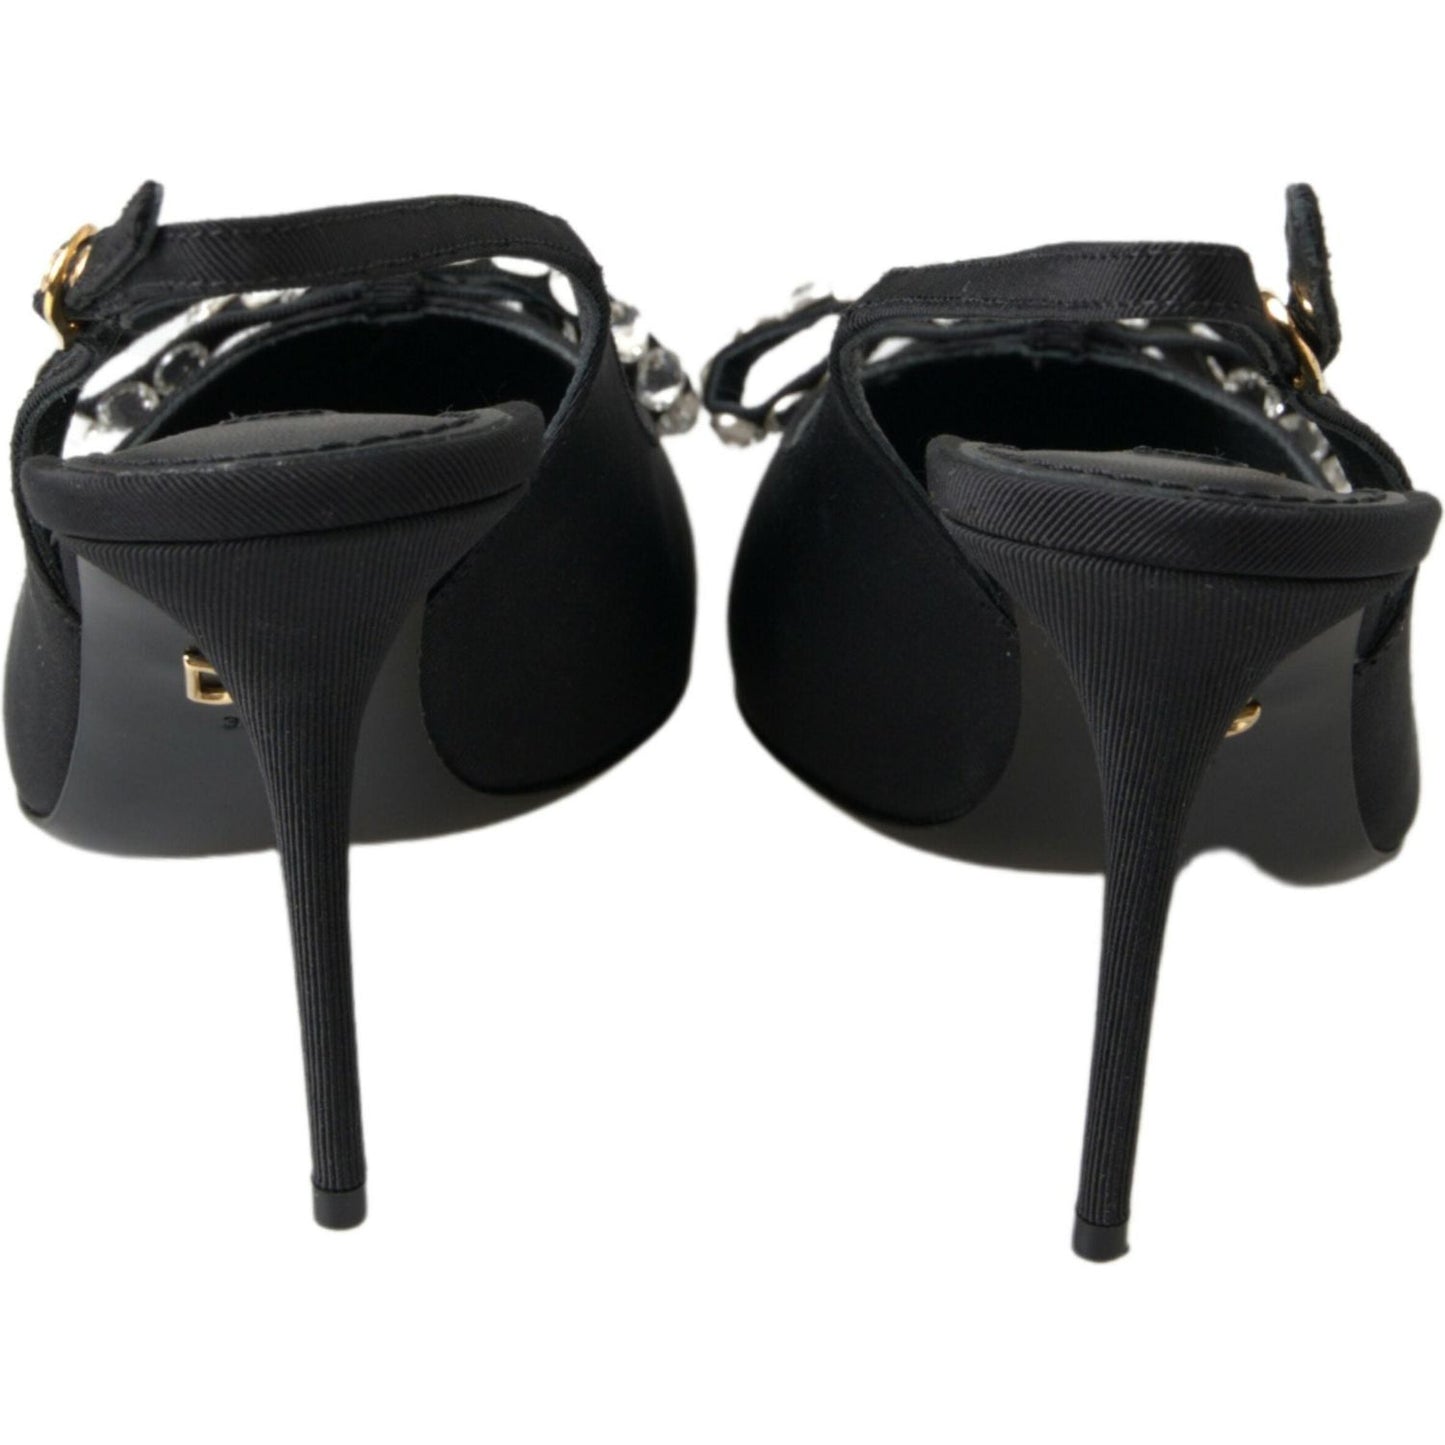 Dolce & Gabbana Embellished Black Slingback Heels Pumps black-crystal-embellished-slingback-heel-shoes